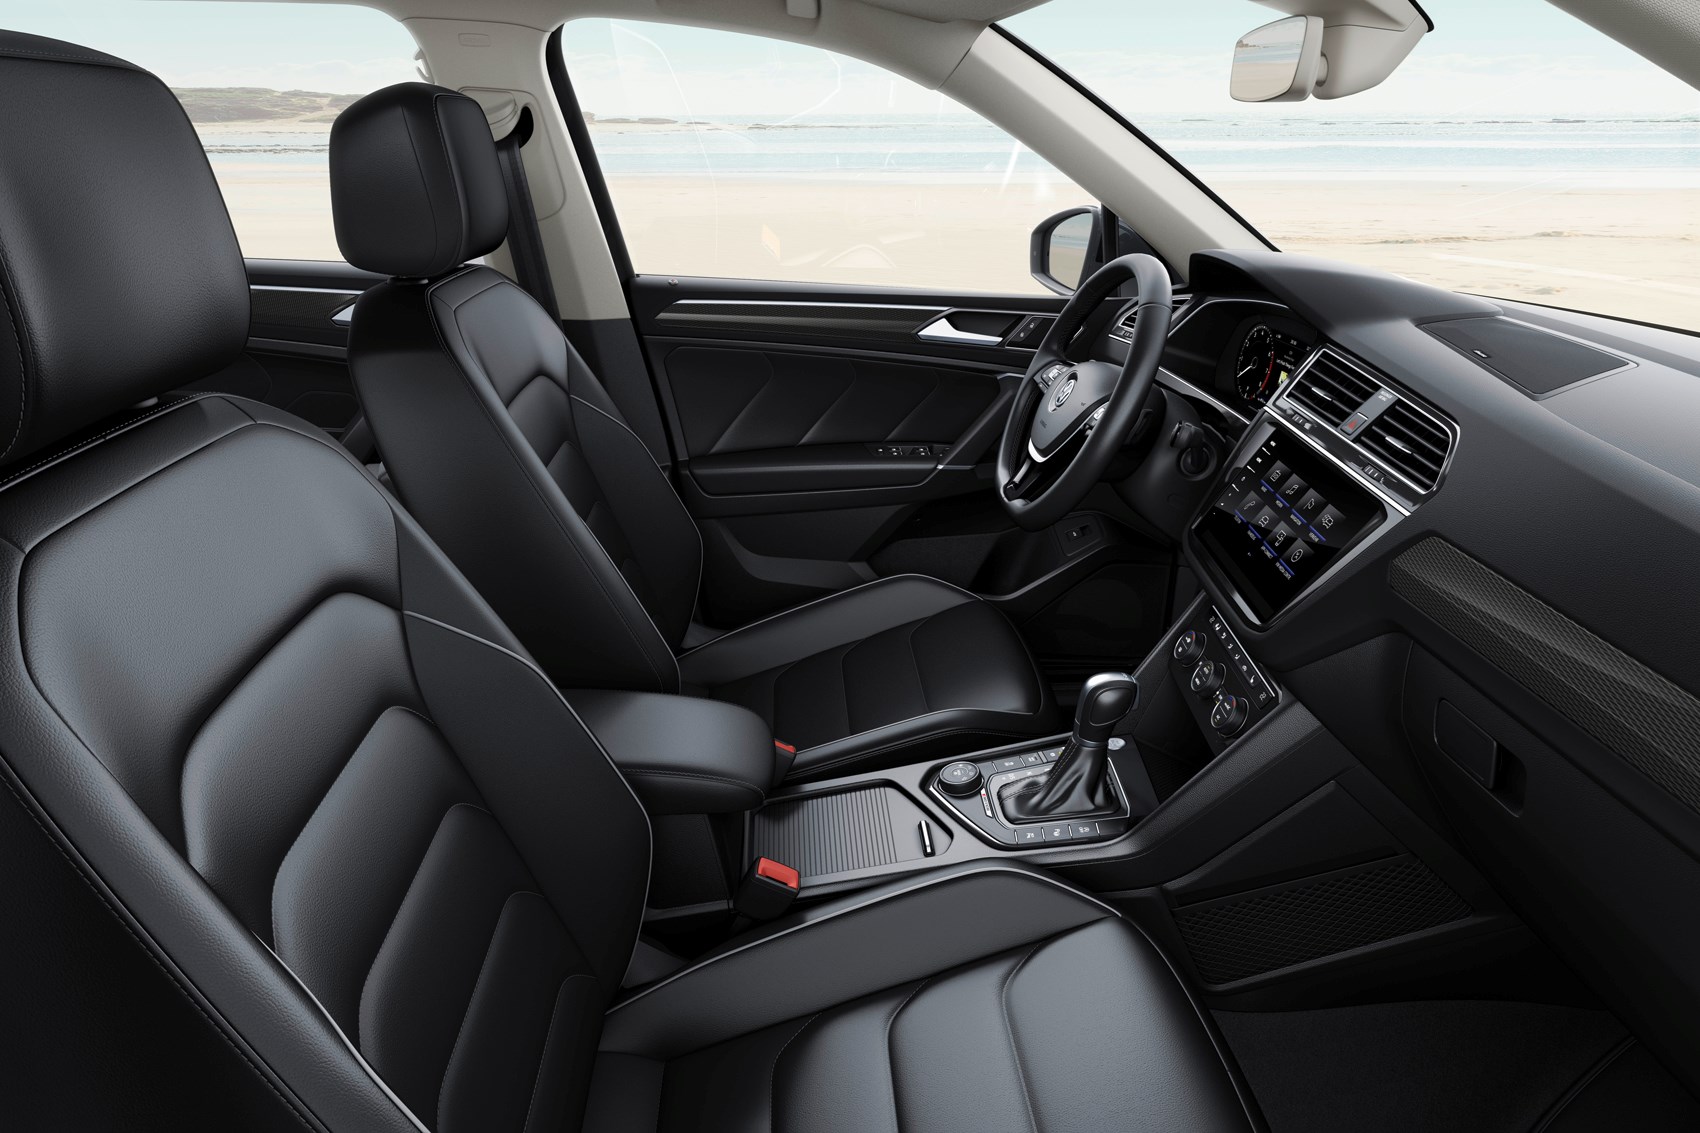 Volkswagen Tiguan Allspace Review 2020 Parkers